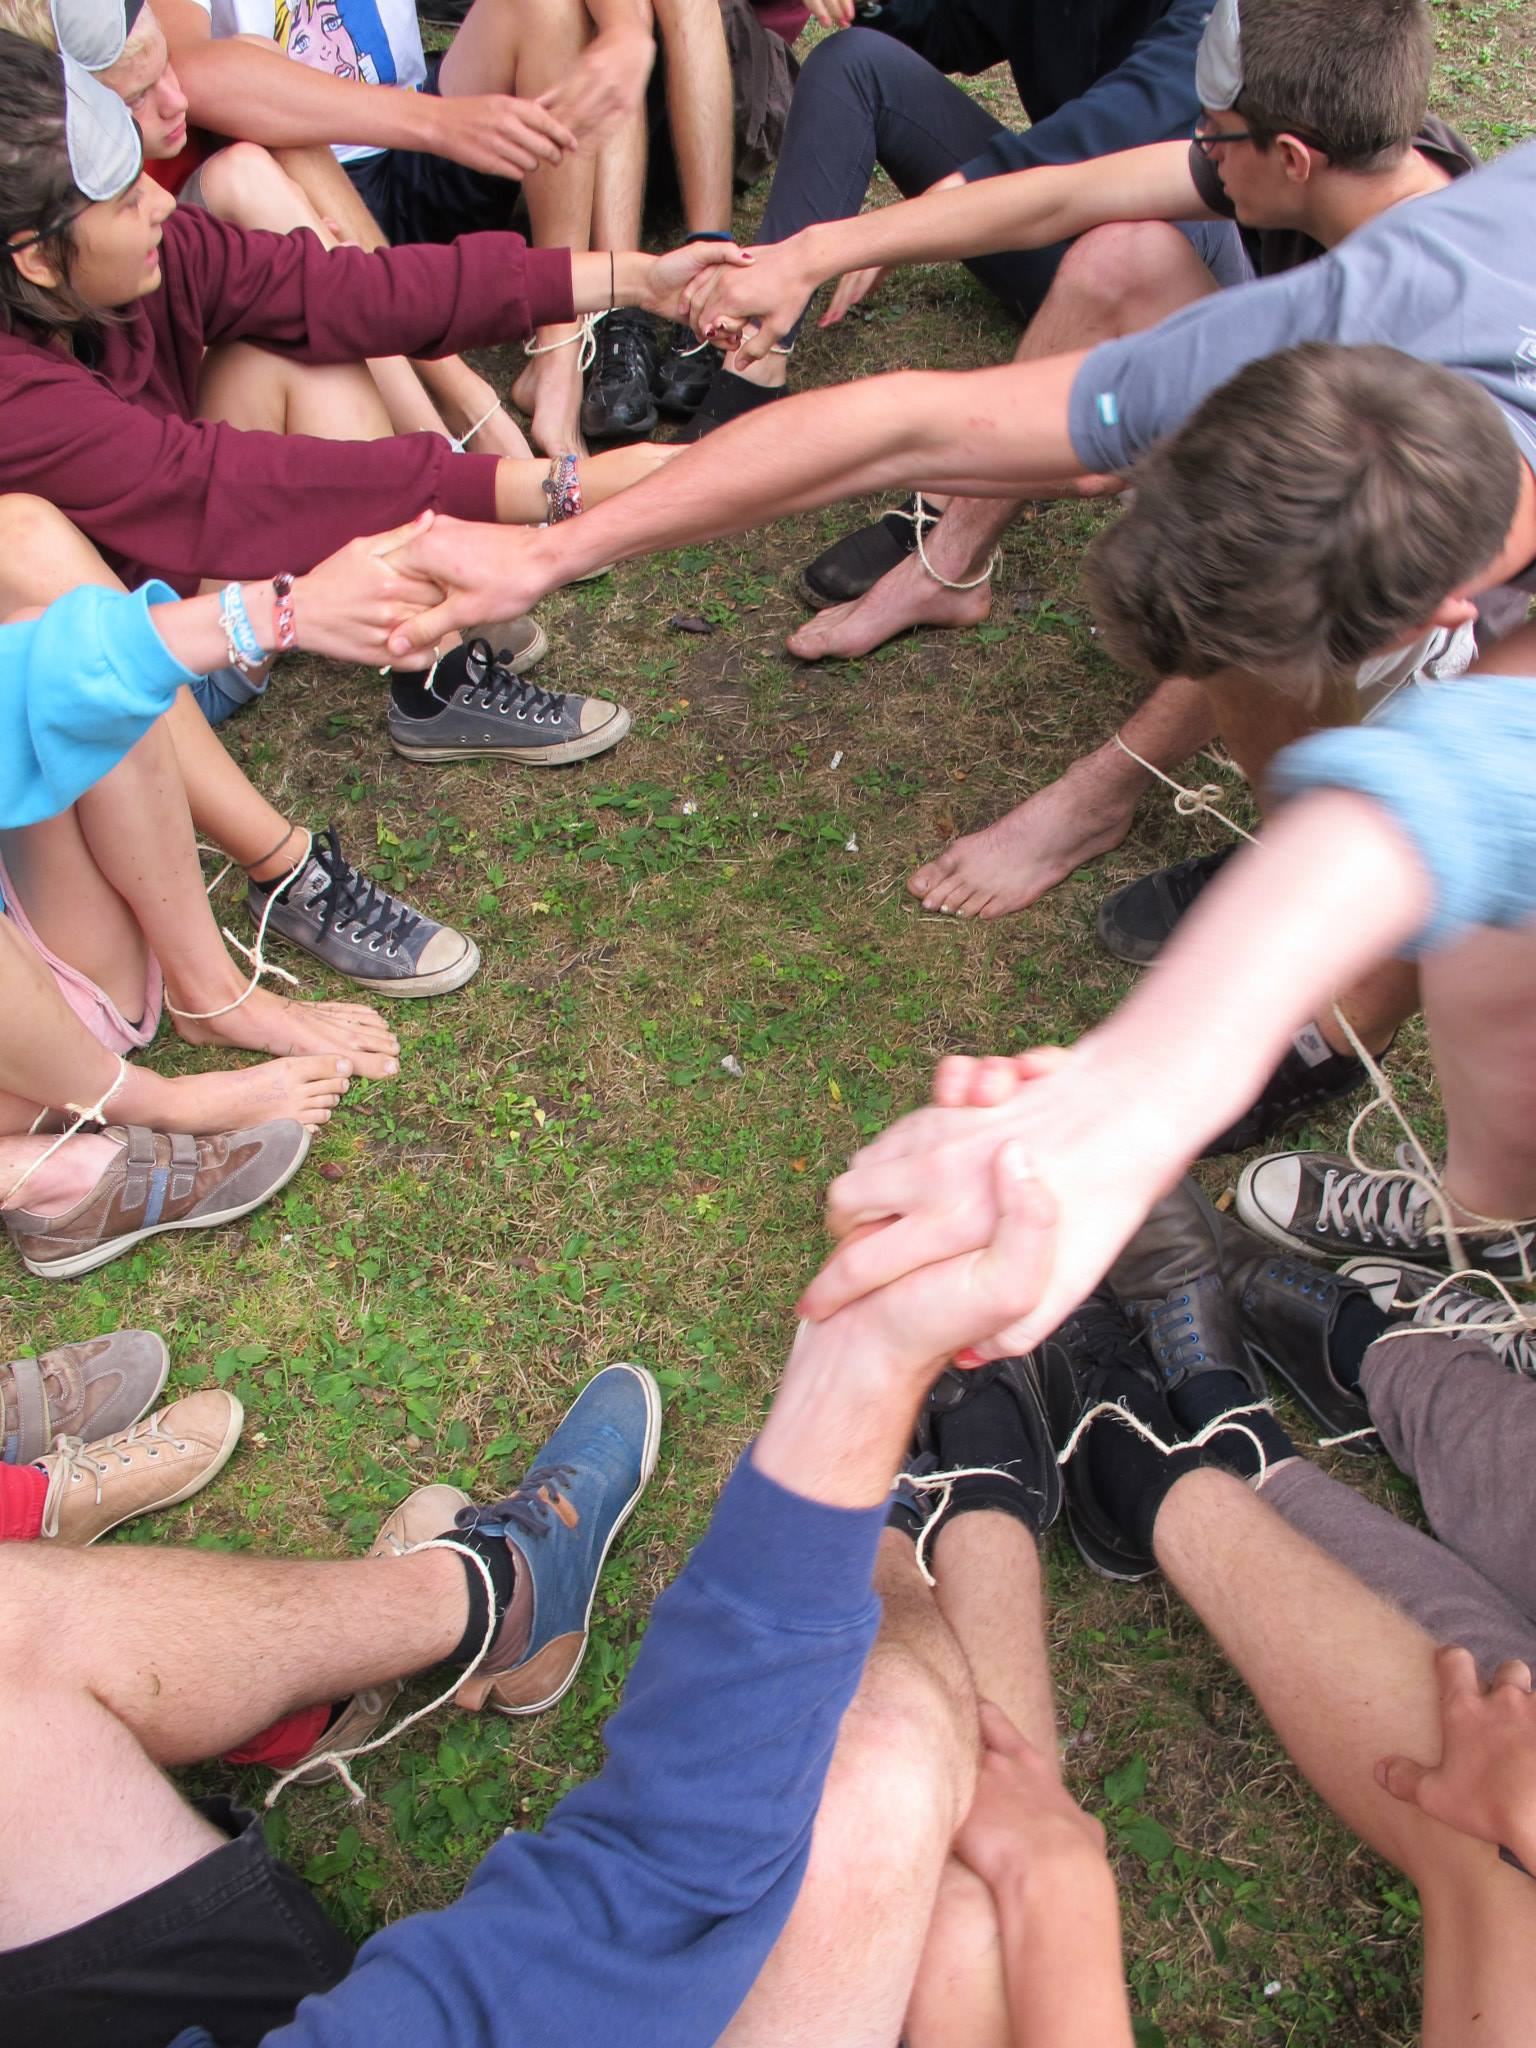 foto -spel, groep leden probeert elkaar recht te trekken terwijl hun voeten aan elkaar geknoopt zijn